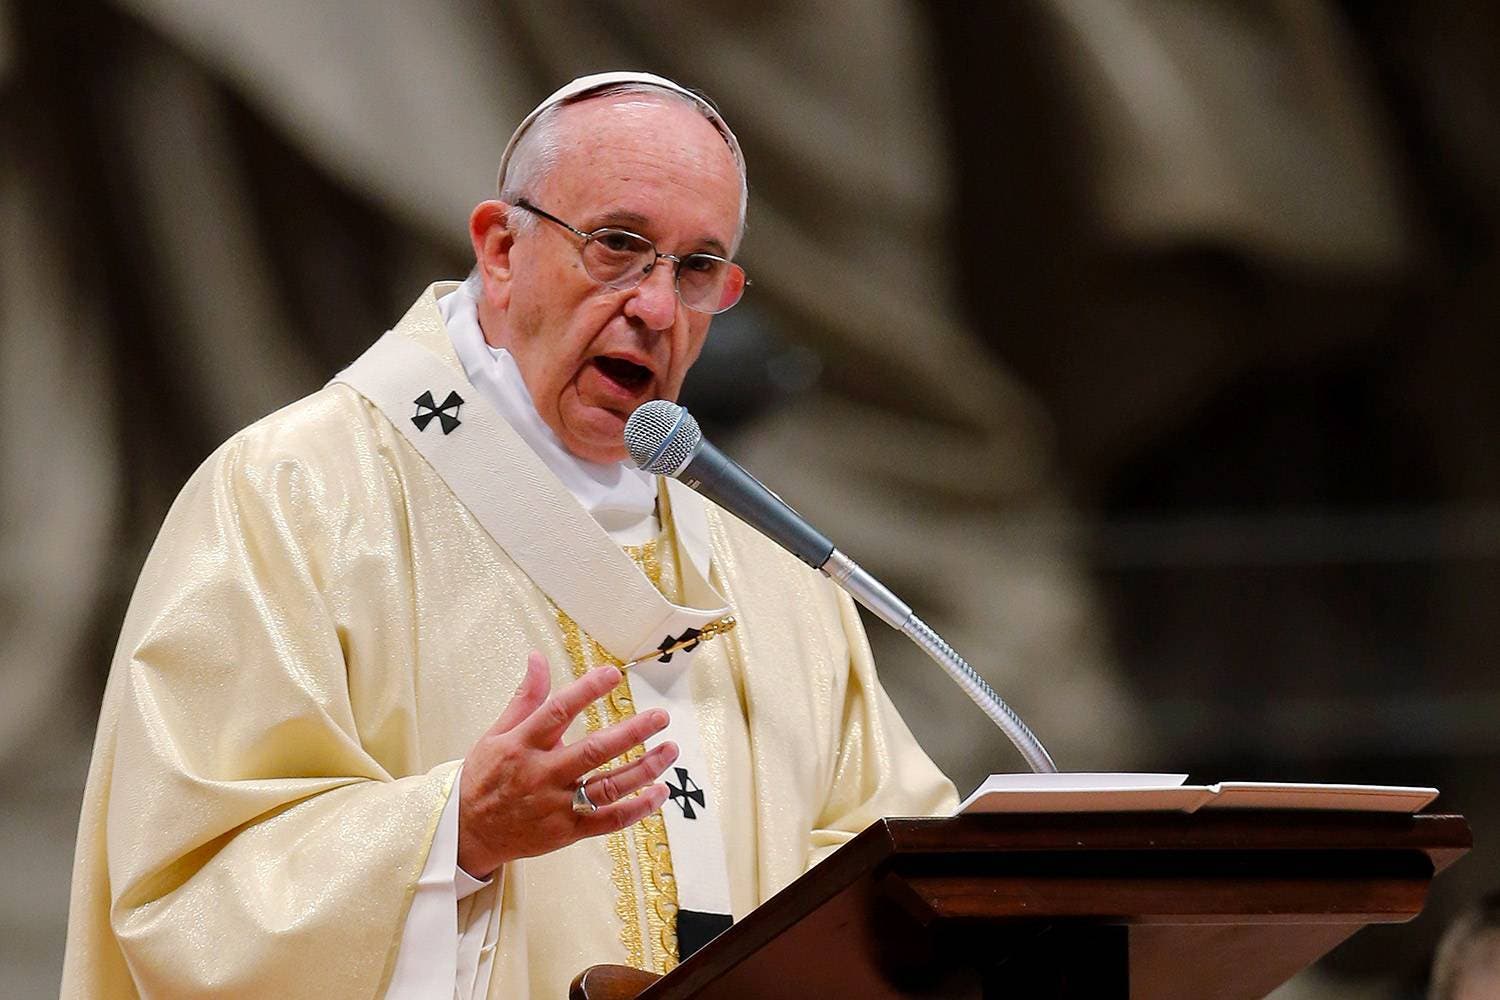 El papa recibirá en los “próximos días” a víctimas de abusos sexuales en Chile